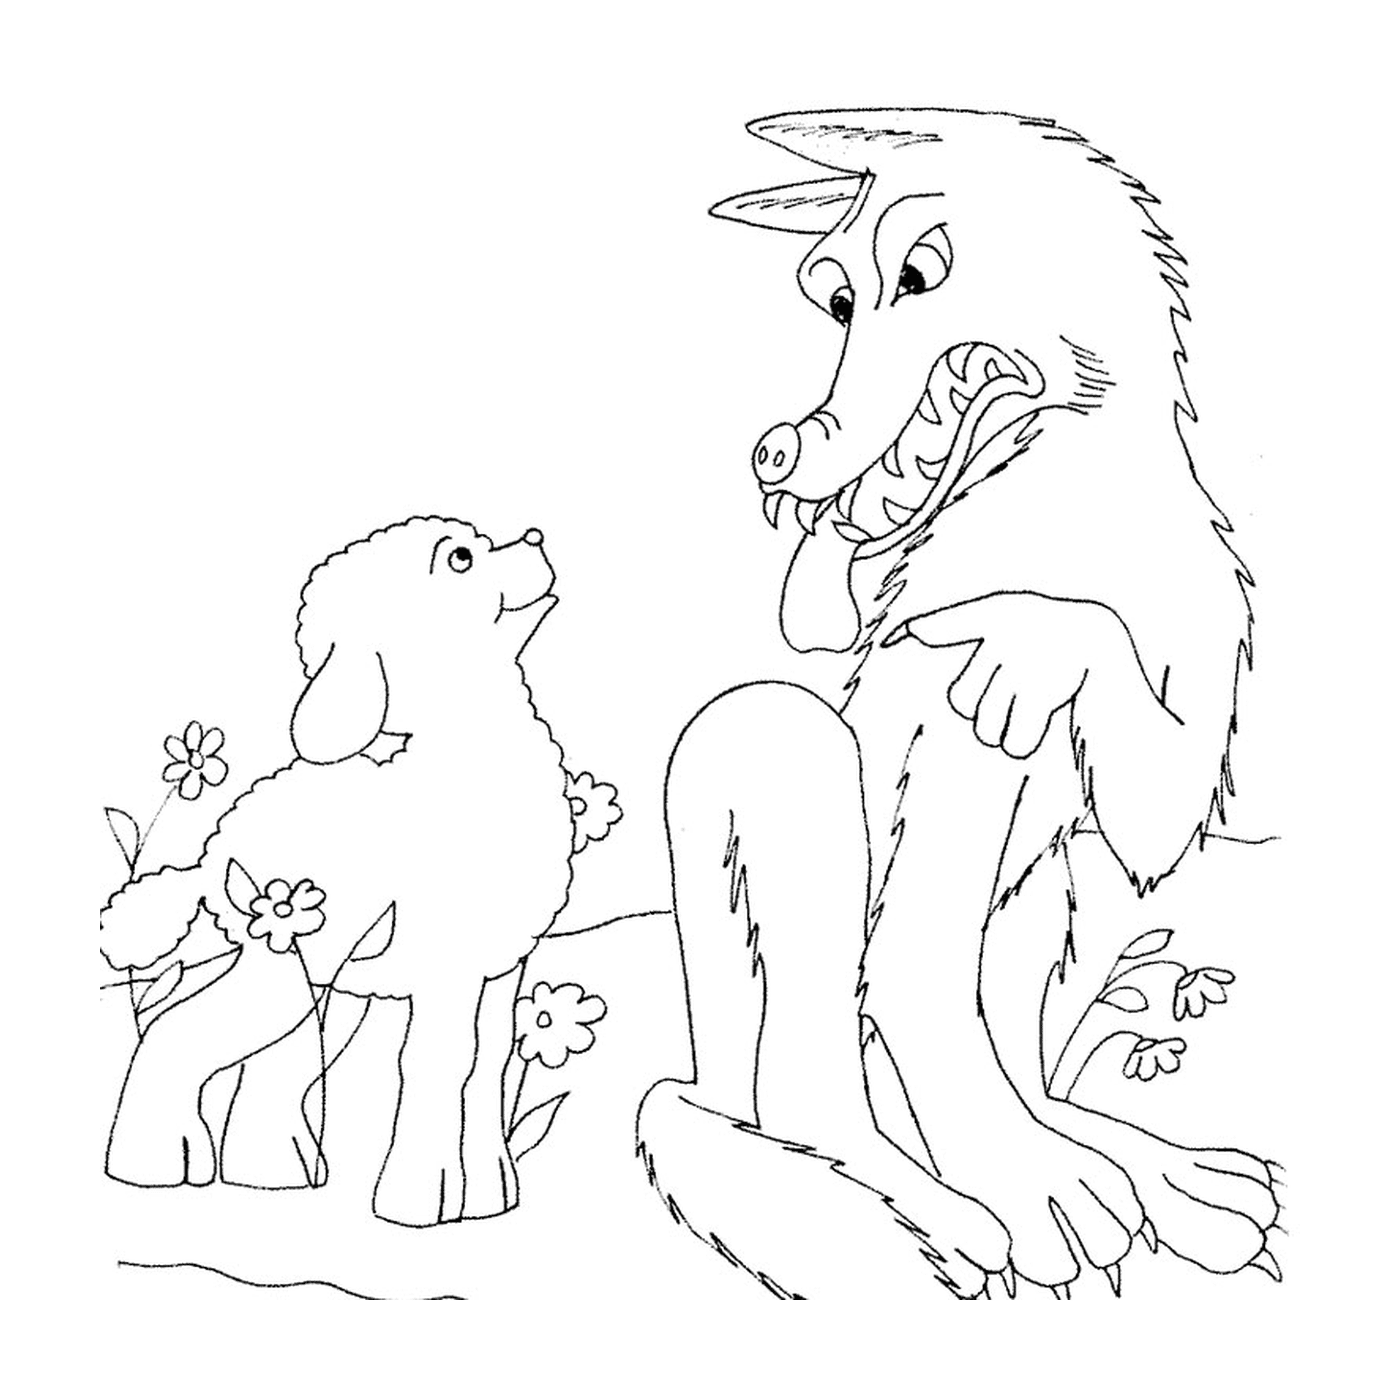  एक वयस्क और एक बच्चा भेड़िया एक क्षेत्र में बैठे 